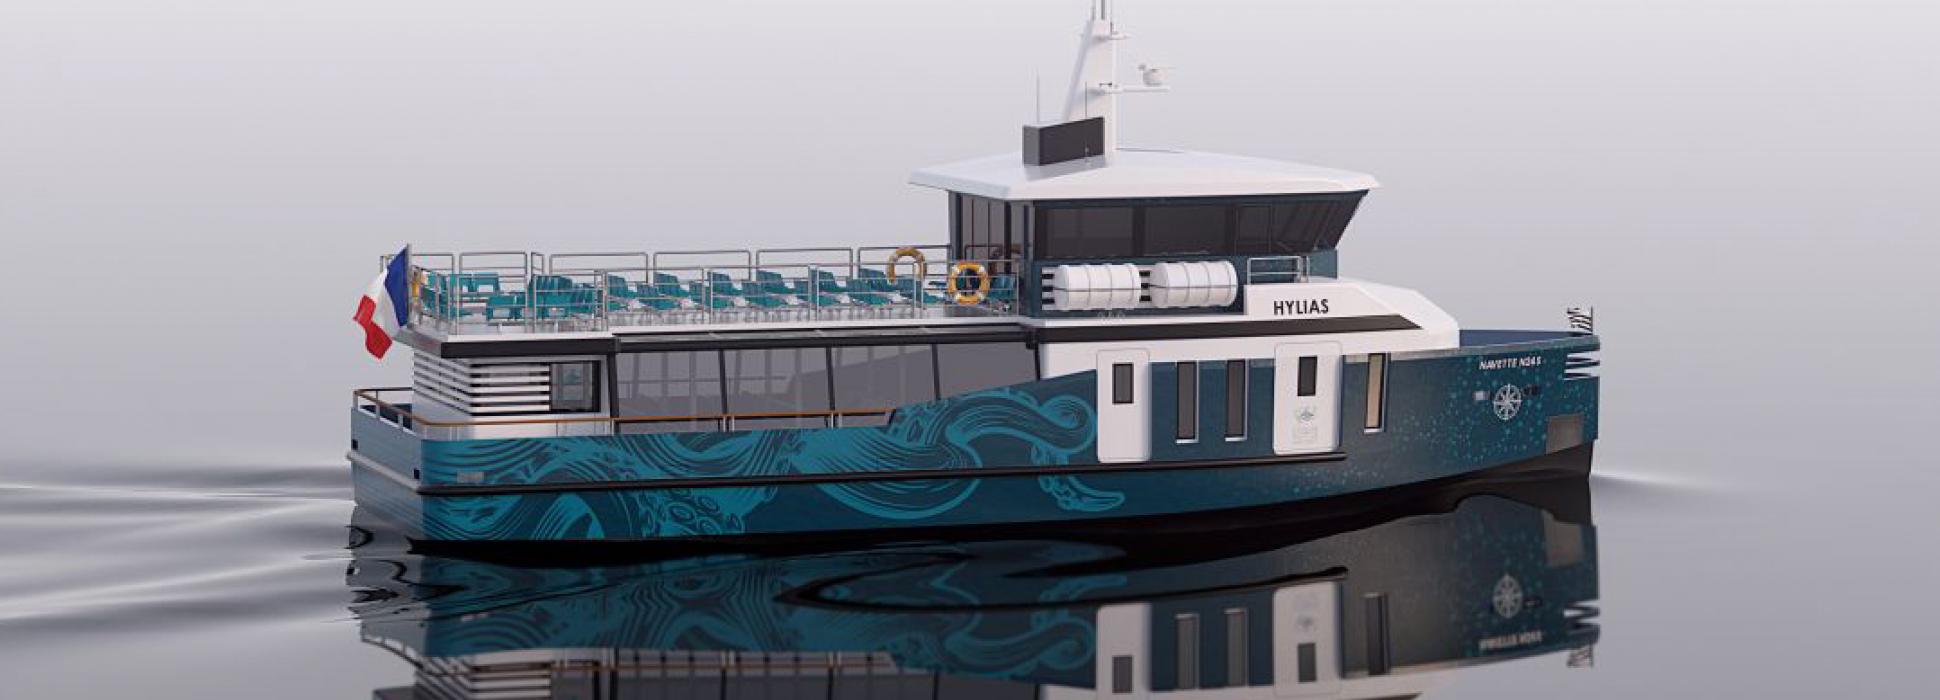 Dans le Morbihan, le bateau à propulsion hydrogène électrique Hylias pourrait être mis à l’eau en 2024